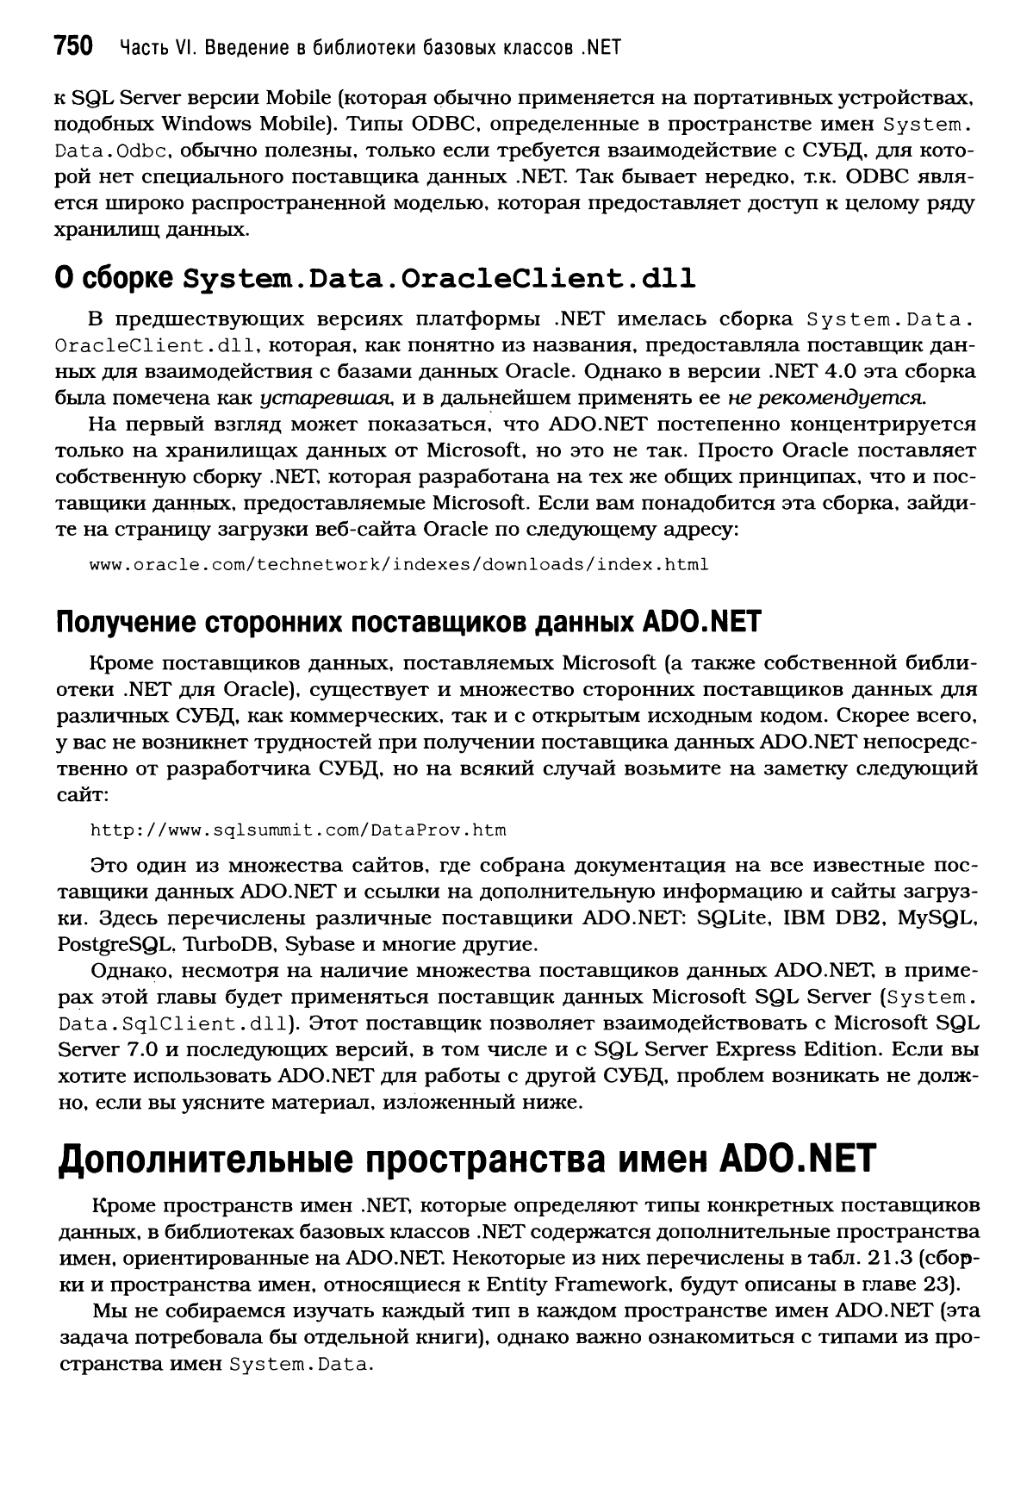 О сборке System.Data.0racleClient.dll
Получение сторонних поставщиков данных ADO.NET
Дополнительные пространства имен ADO.NET